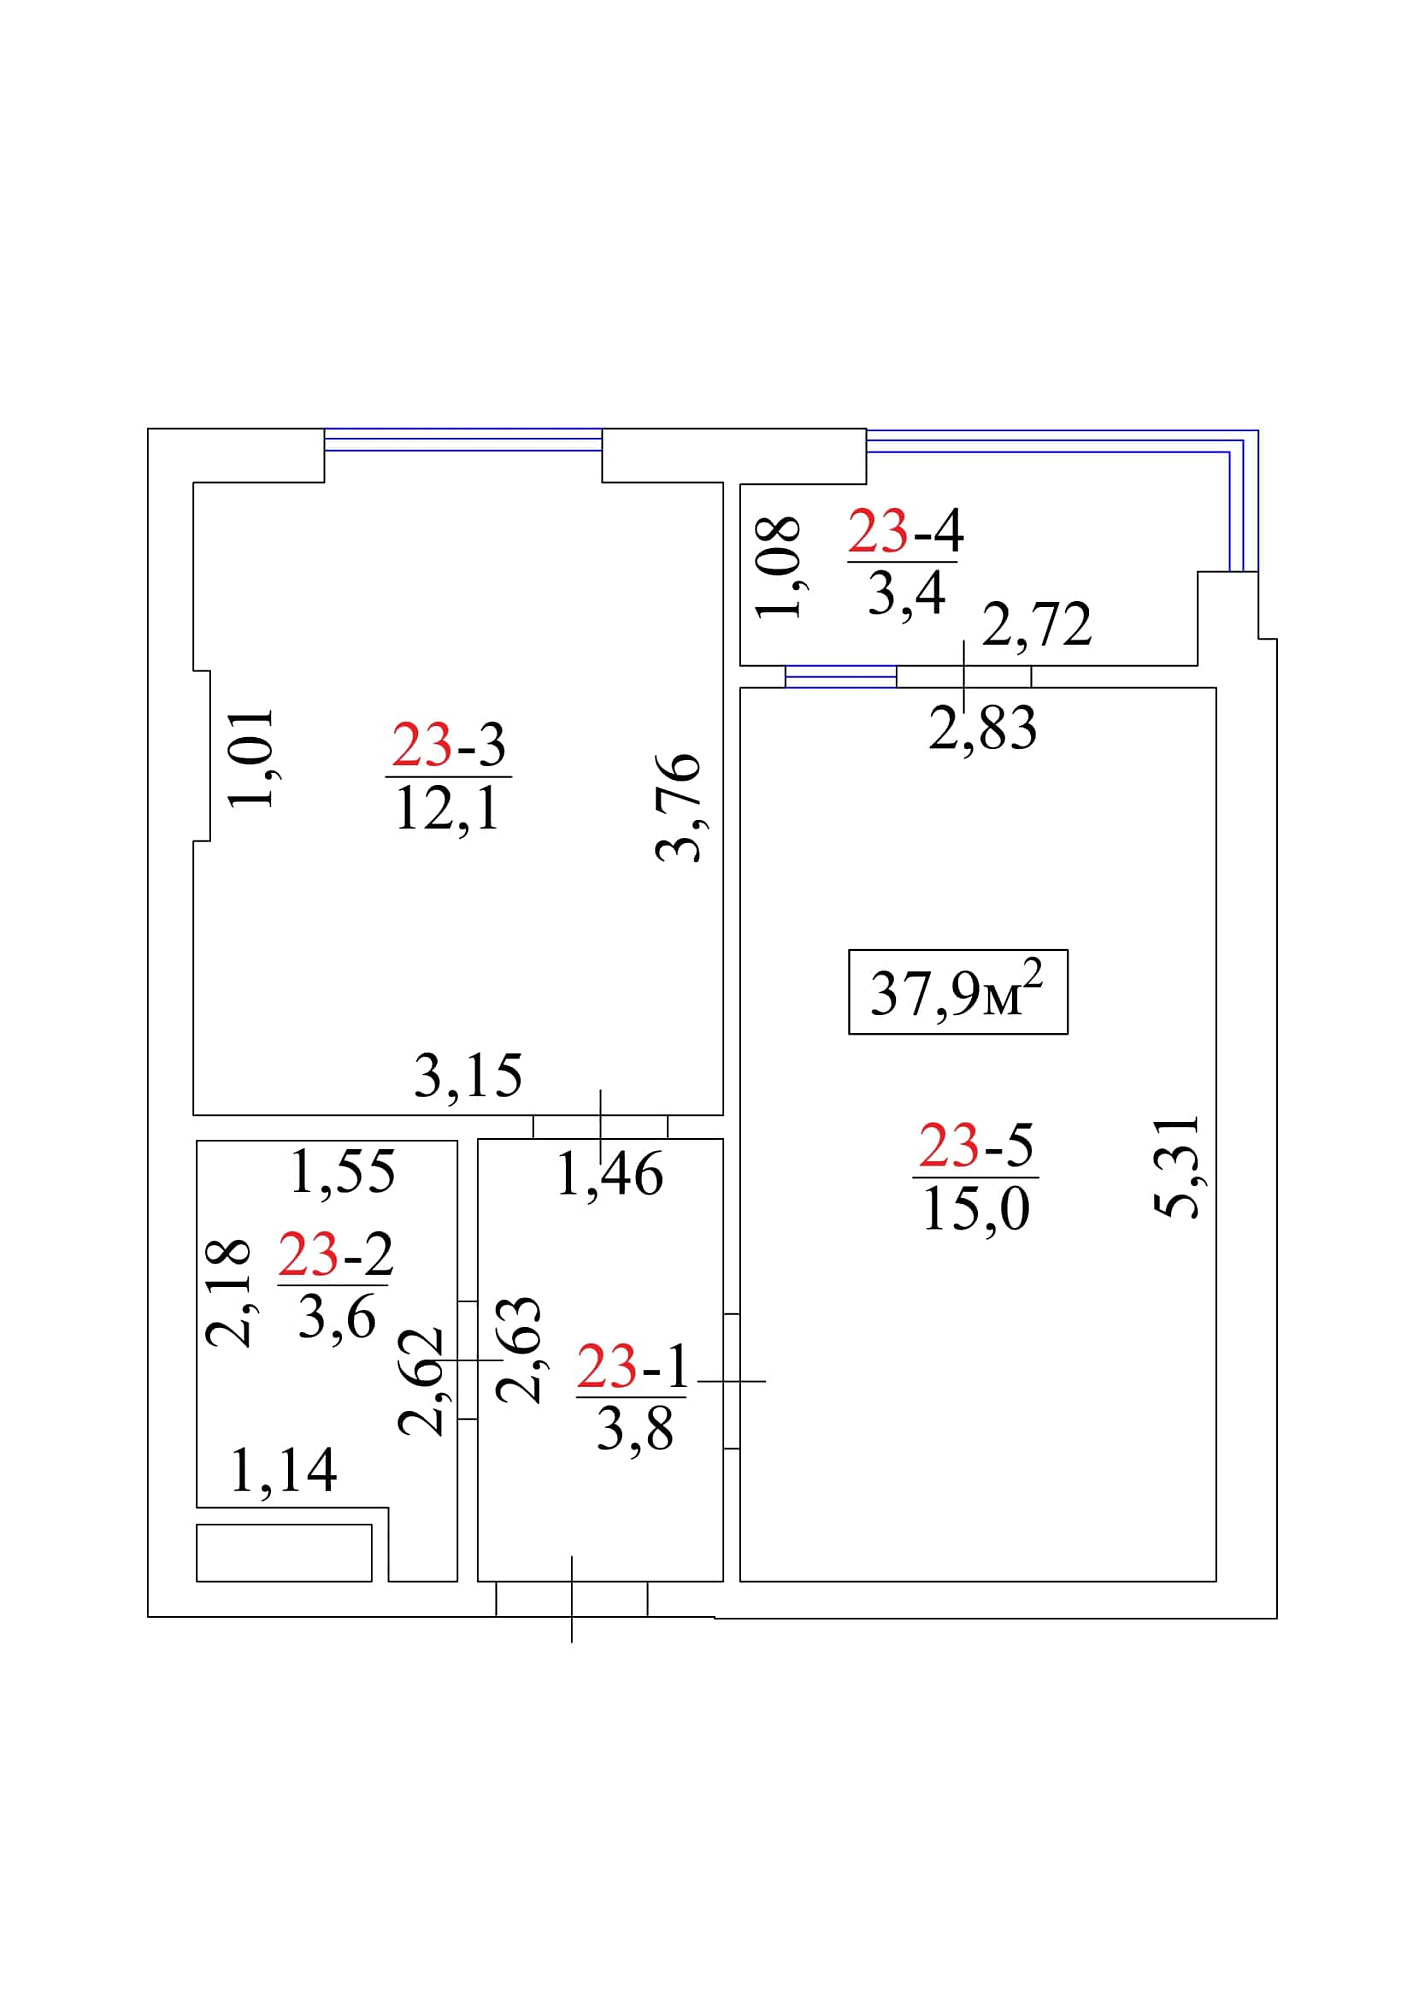 Планування 1-к квартира площею 37.9м2, AB-01-03/0024а.